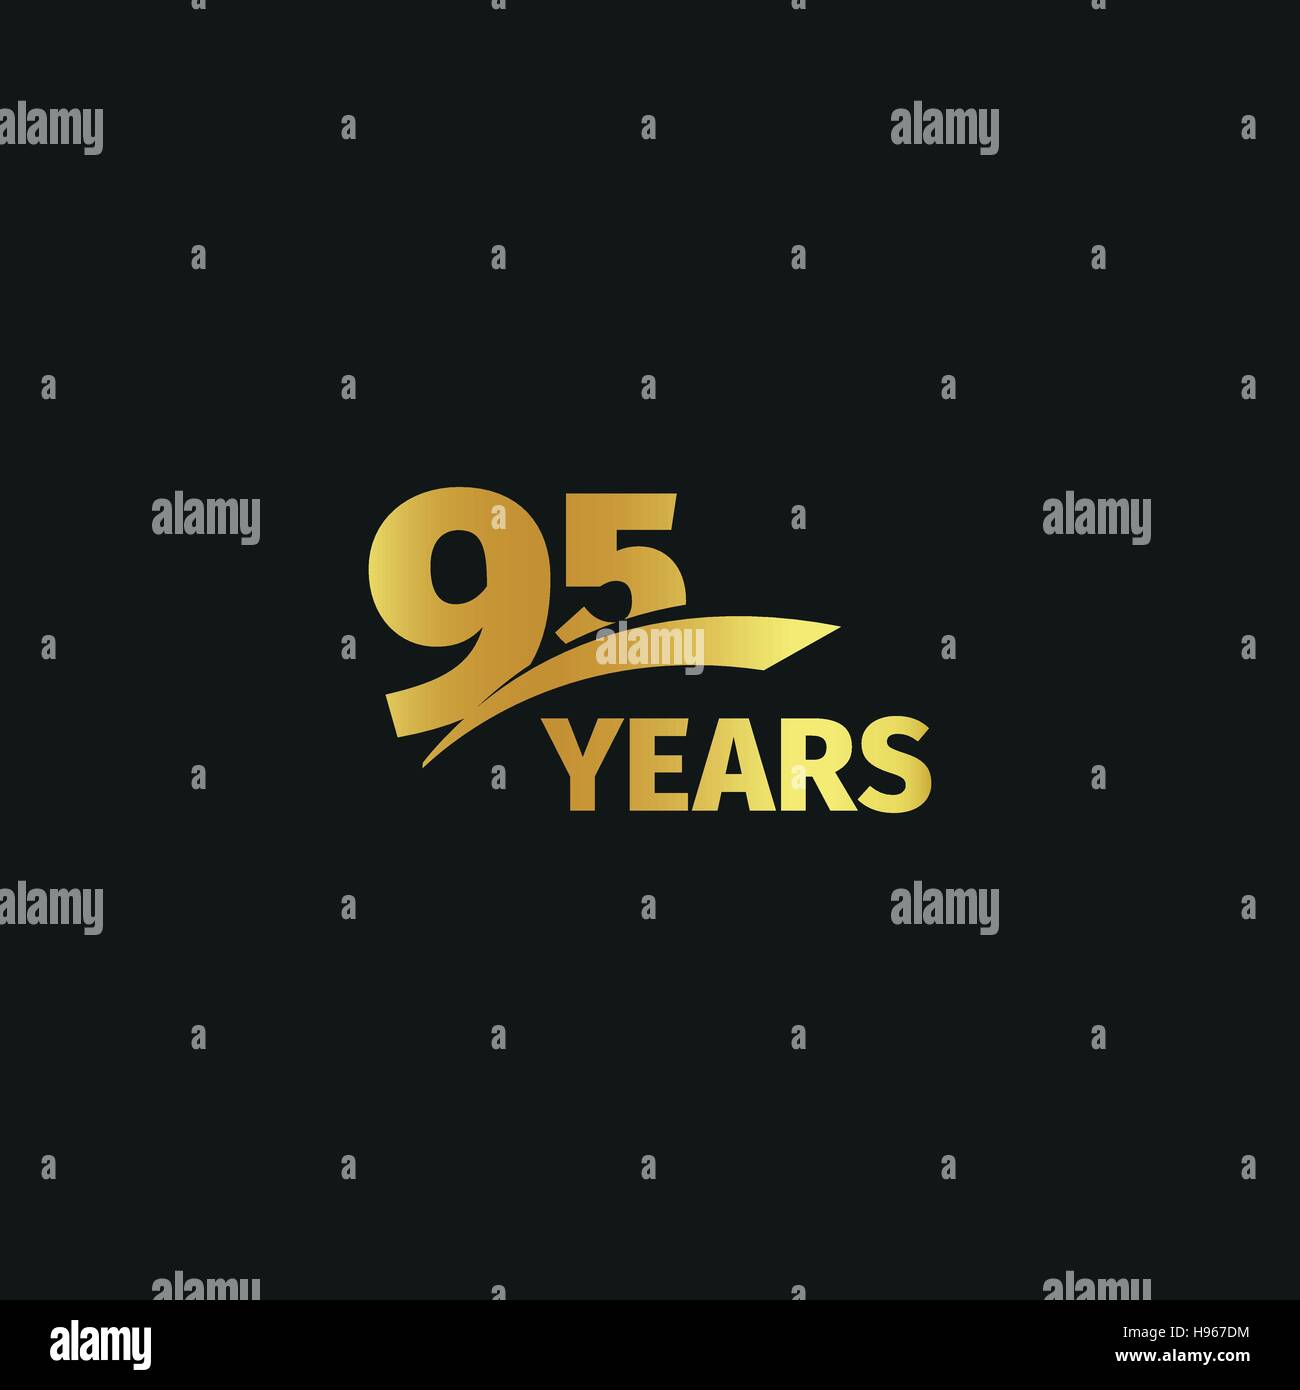 Abstract golden 95th Jahrestag Logo auf schwarzem Hintergrund isoliert. 95 Nr. Schriftzug. Ninty-fünf Jahre Jubiläum Feier Symbol. Geburtstag-Emblem. Vektor-Illustration. Stock Vektor